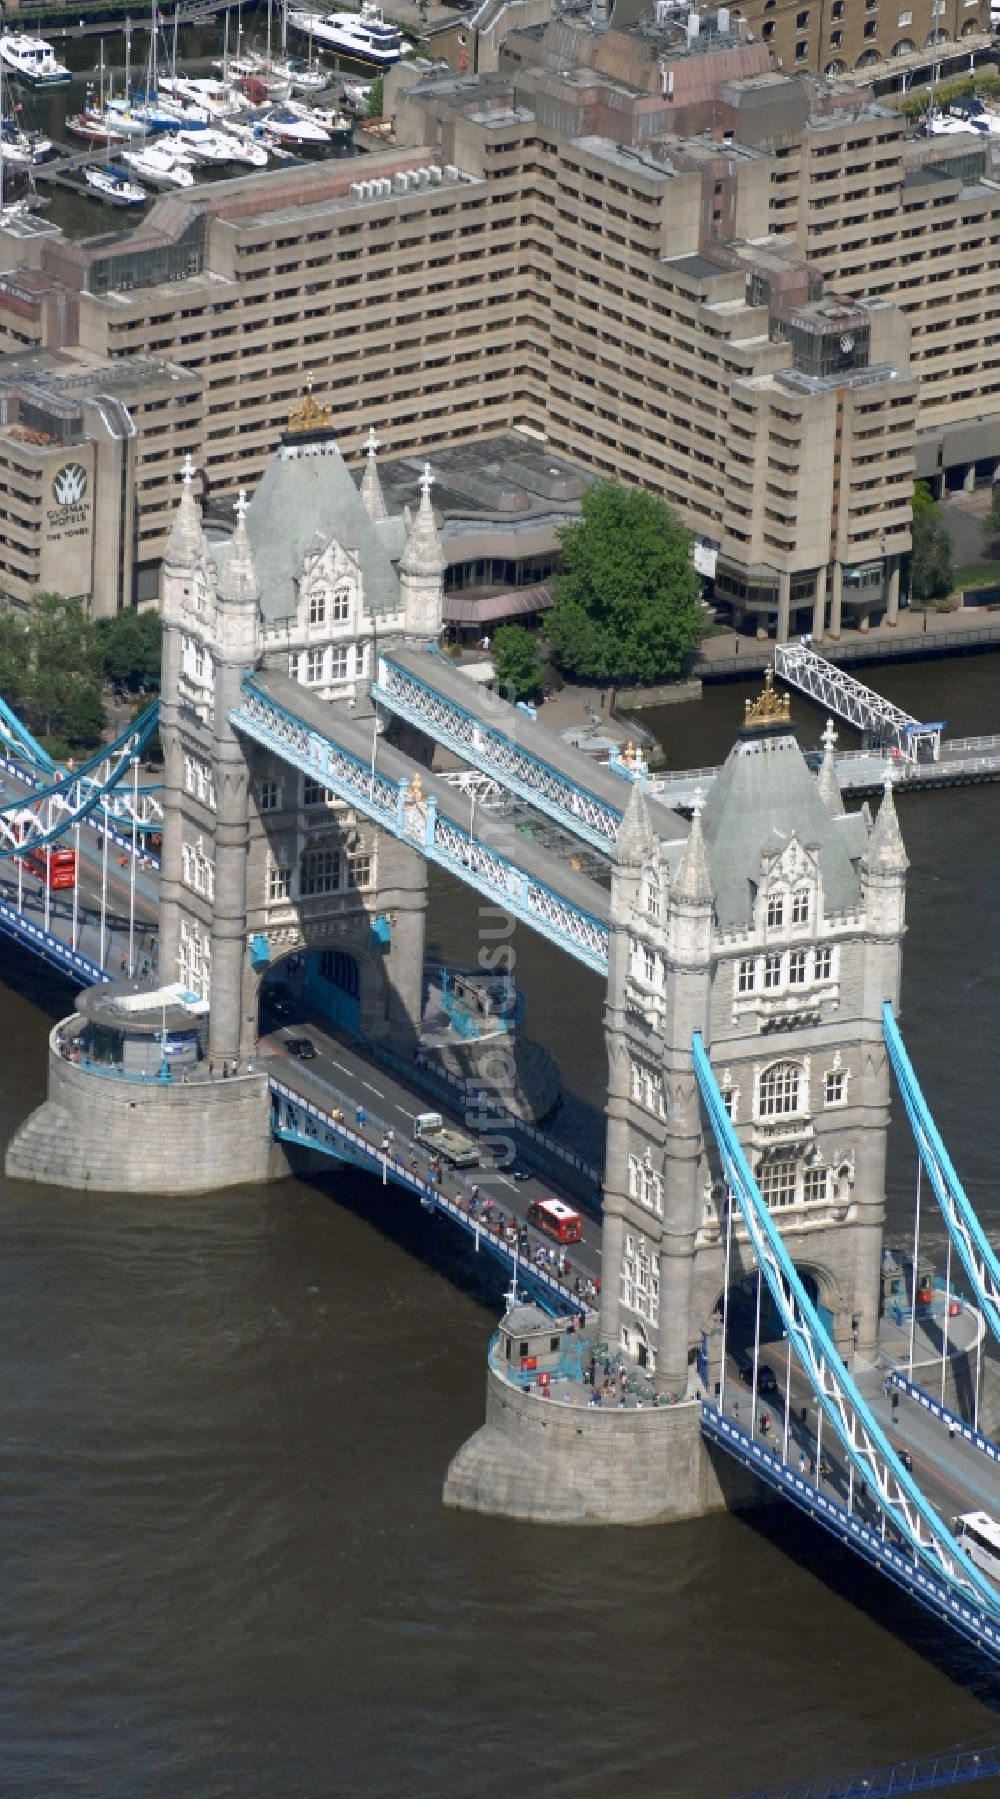 London von oben - Tower Bridge über der Themse - das Wahrzeichen von London